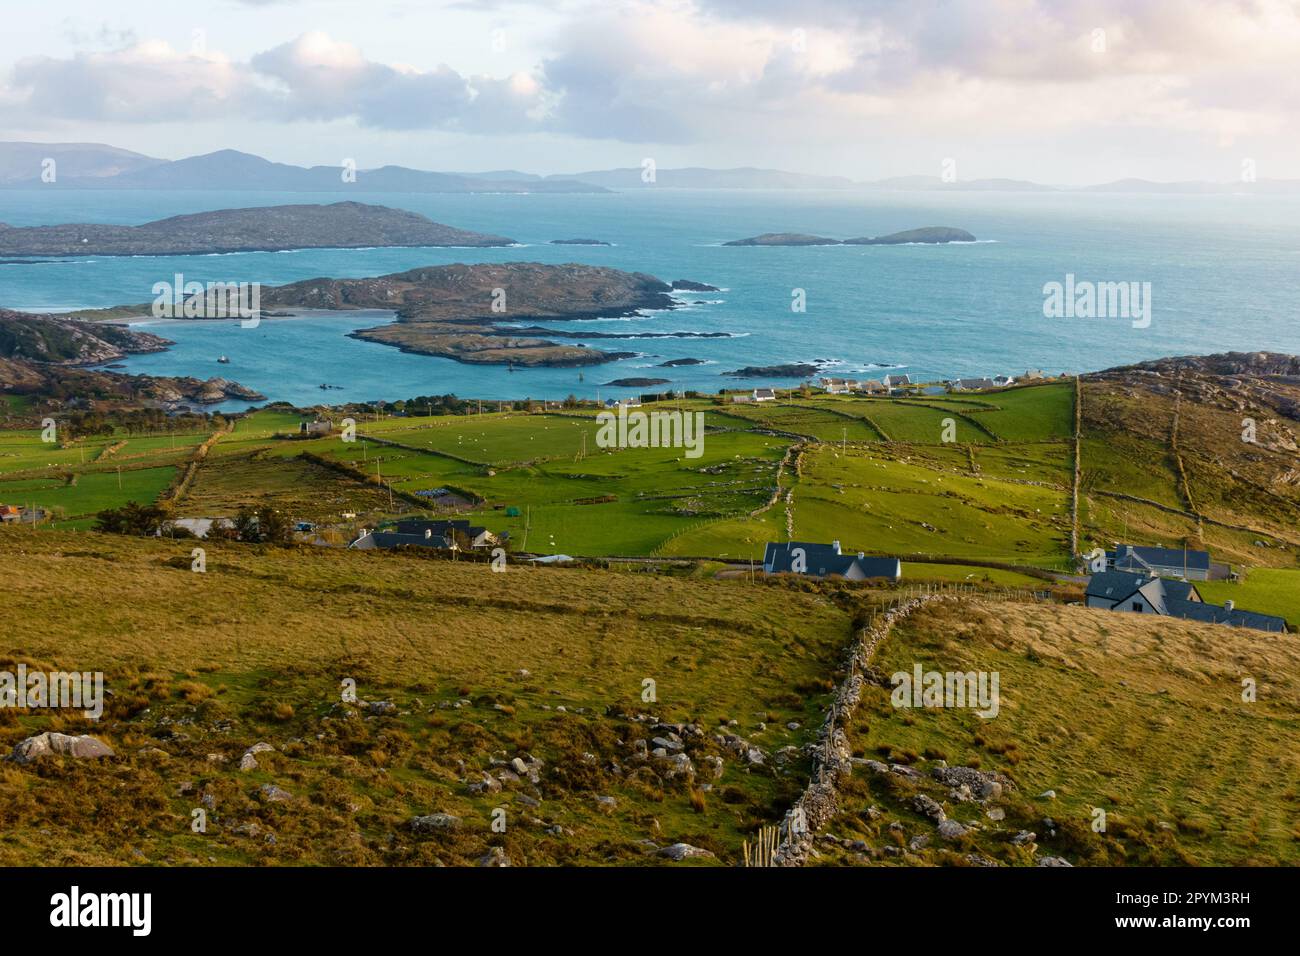 Vista del paisaje rural de Irlanda Foto de stock